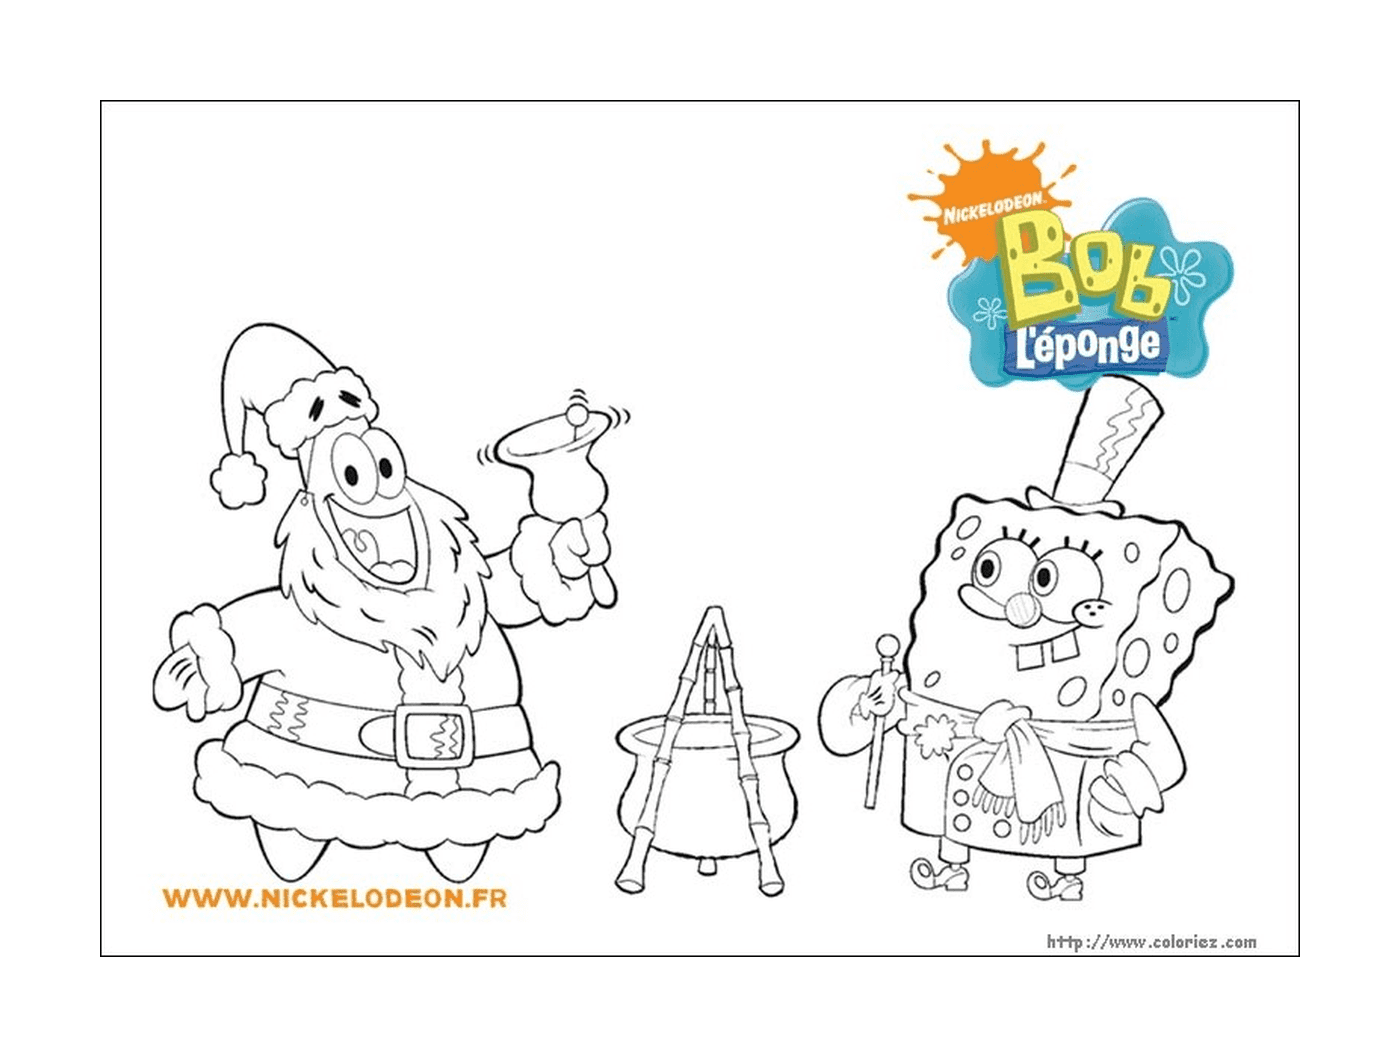  Colorear Bob Esponja y Santa Claus 